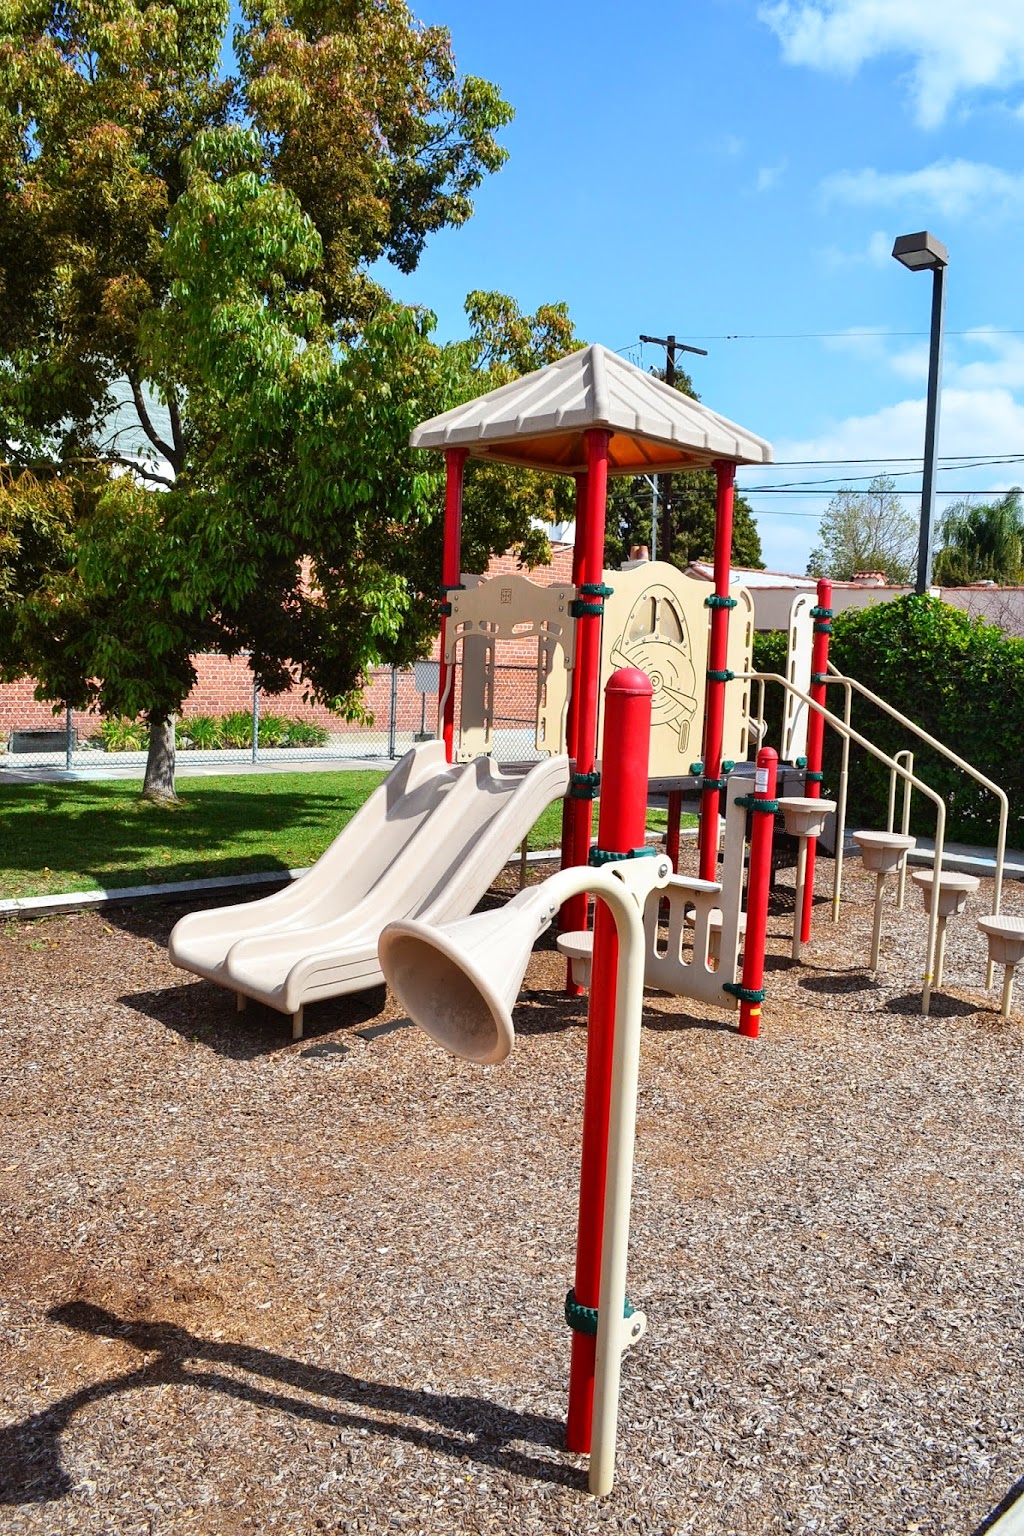 Wonderland Montessori & Preschool of Anaheim | 624 N Anaheim Blvd, Anaheim, CA 92805 | Phone: (714) 774-5330